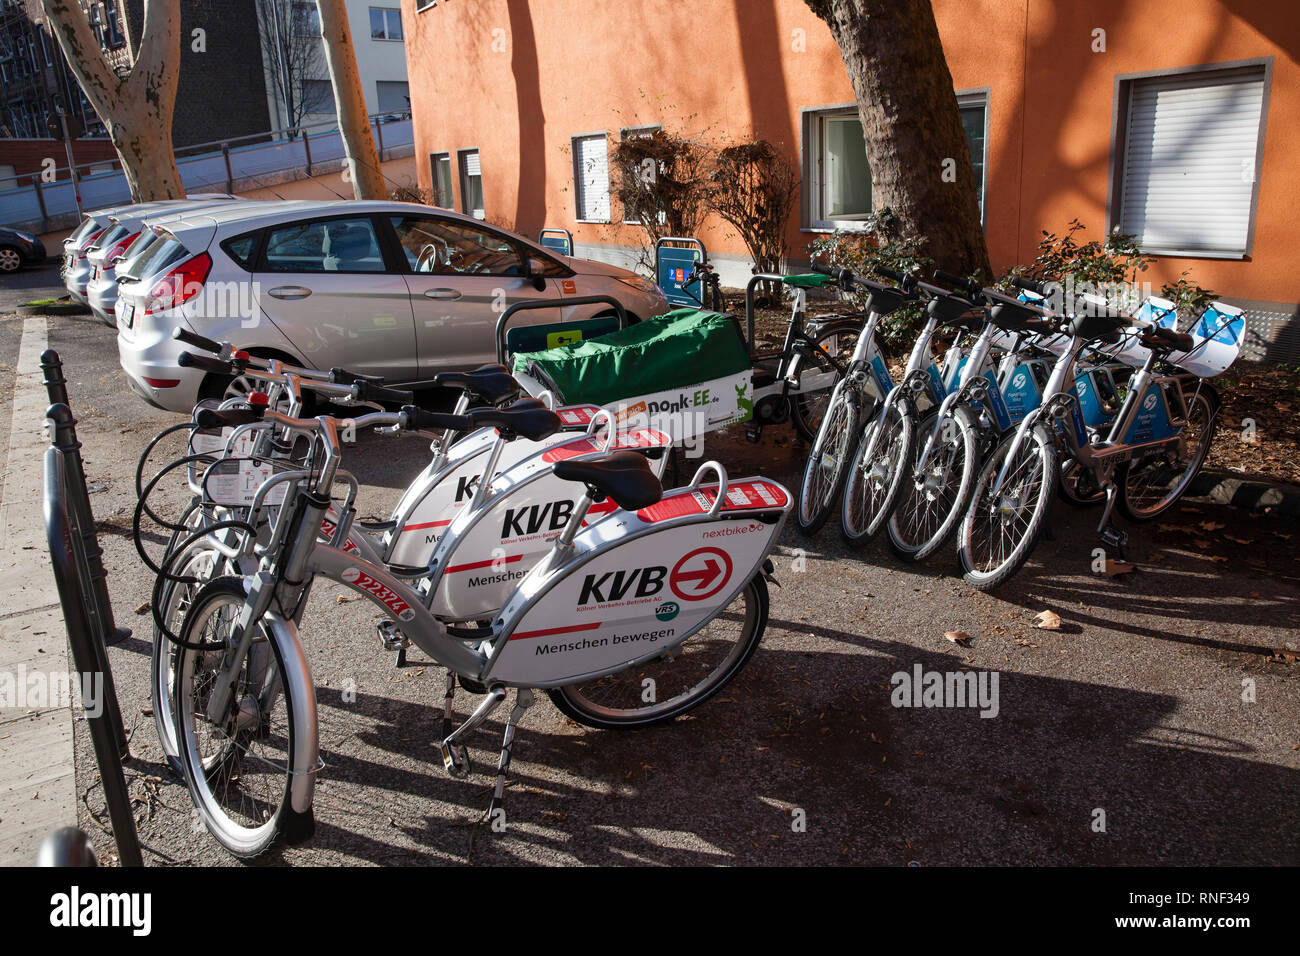 Sur Josephstreet Mobilstation dans le district Severins, Cologne, Allemagne. La station offre l'autopartage, vélo cargo, bikesharing et partage bike parki Banque D'Images